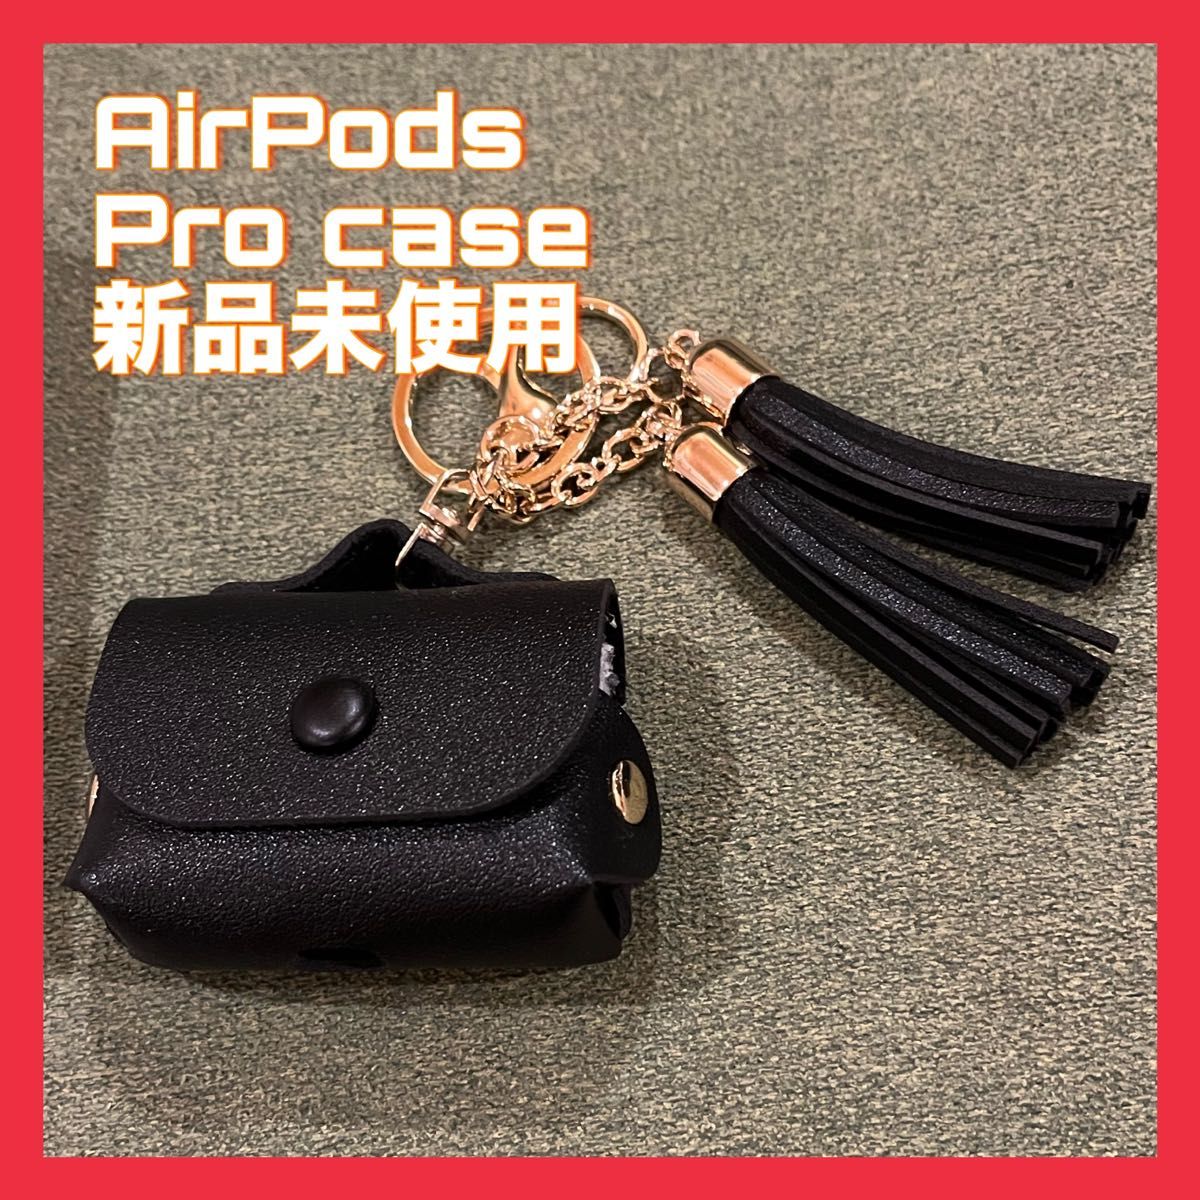 AirPods Pro case 新品未使用 ブラック